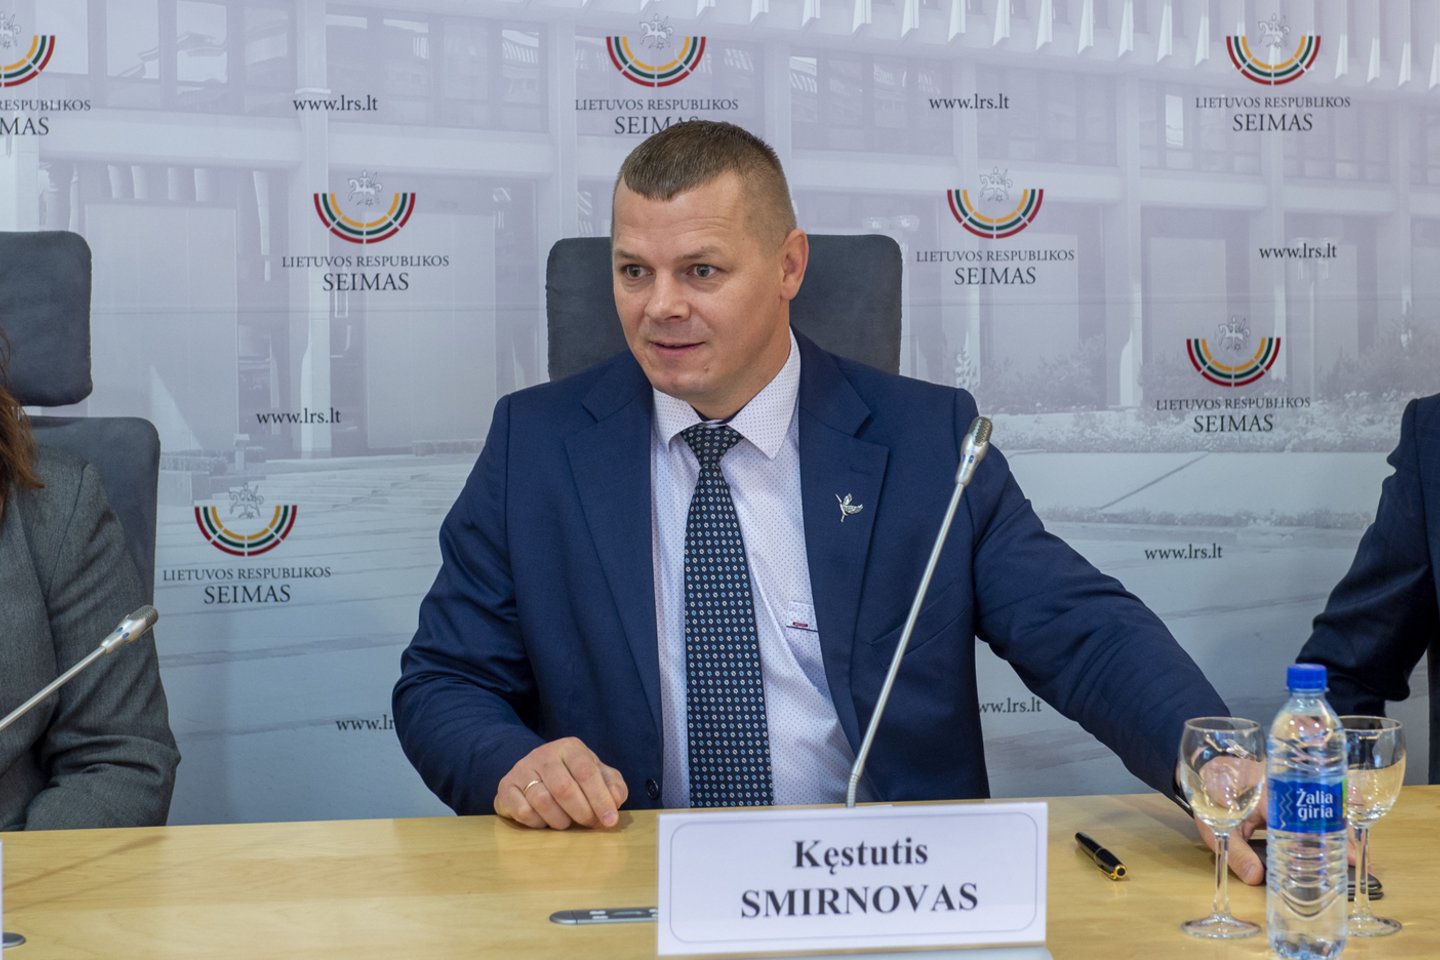 K.Smirnovas pernai nebuvo perrinktas į Seimą.<br>V.